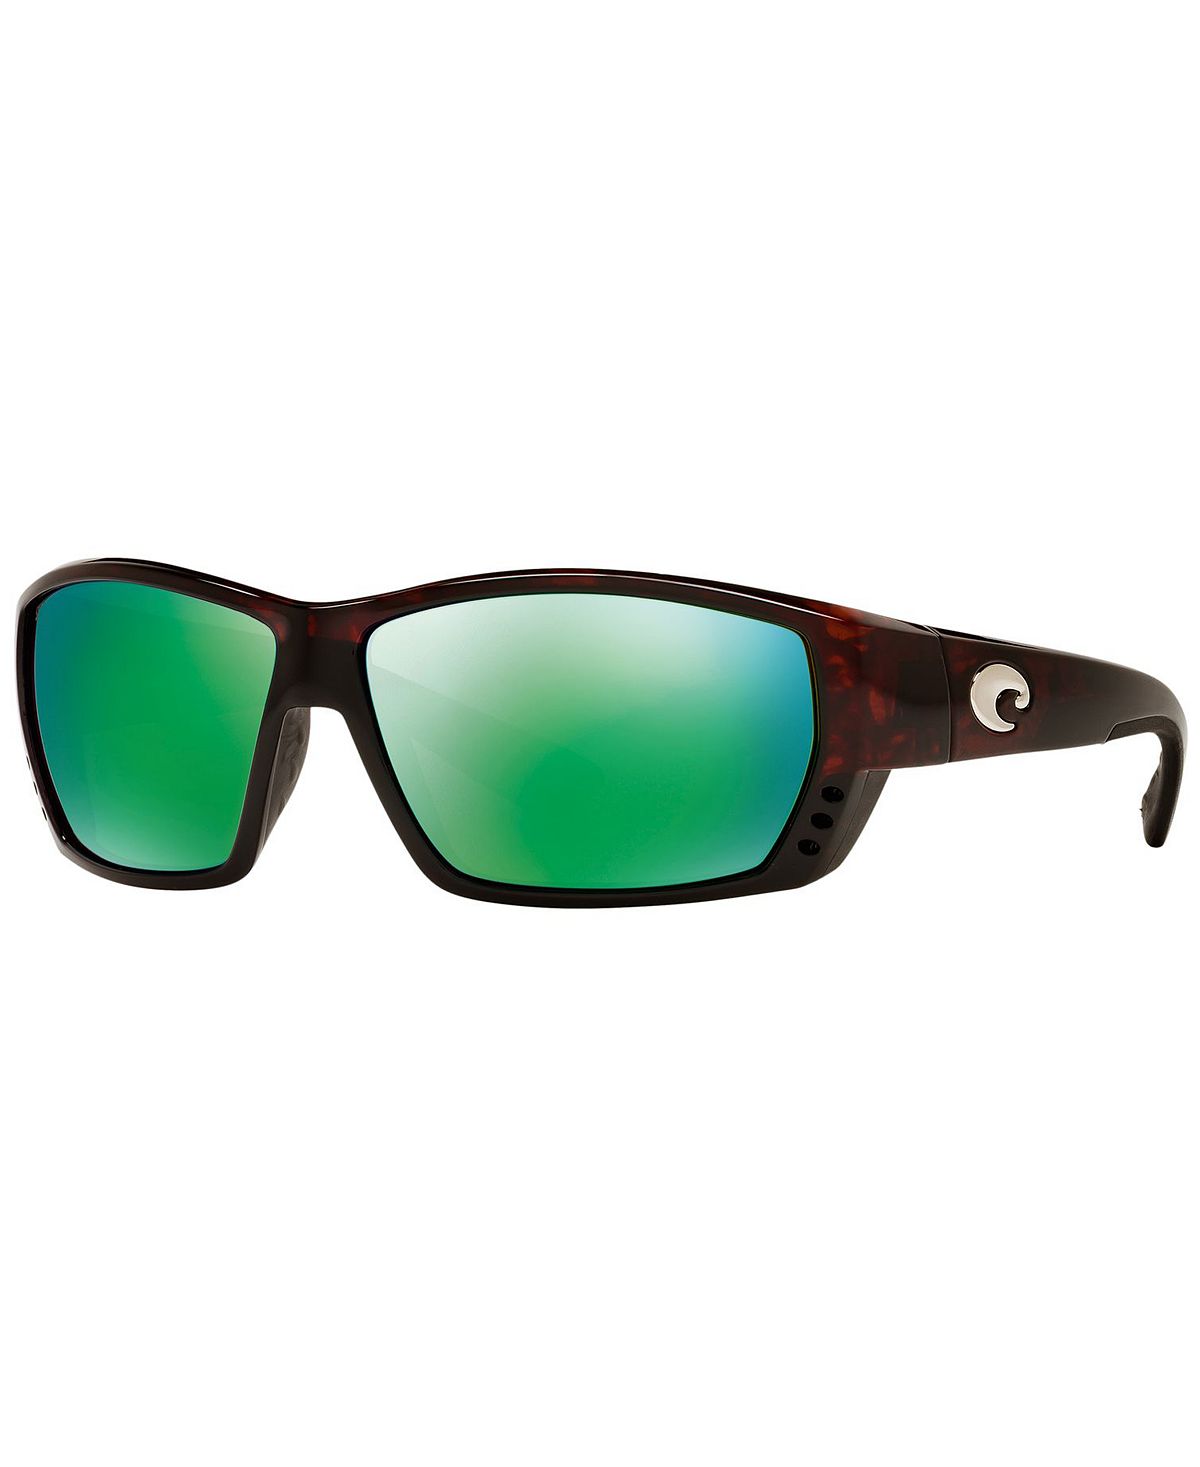 Поляризованные солнцезащитные очки, TUNA ALLEY Costa Del Mar x mode 10x21 5x112 d66 6 et50 gun metallic mirror face